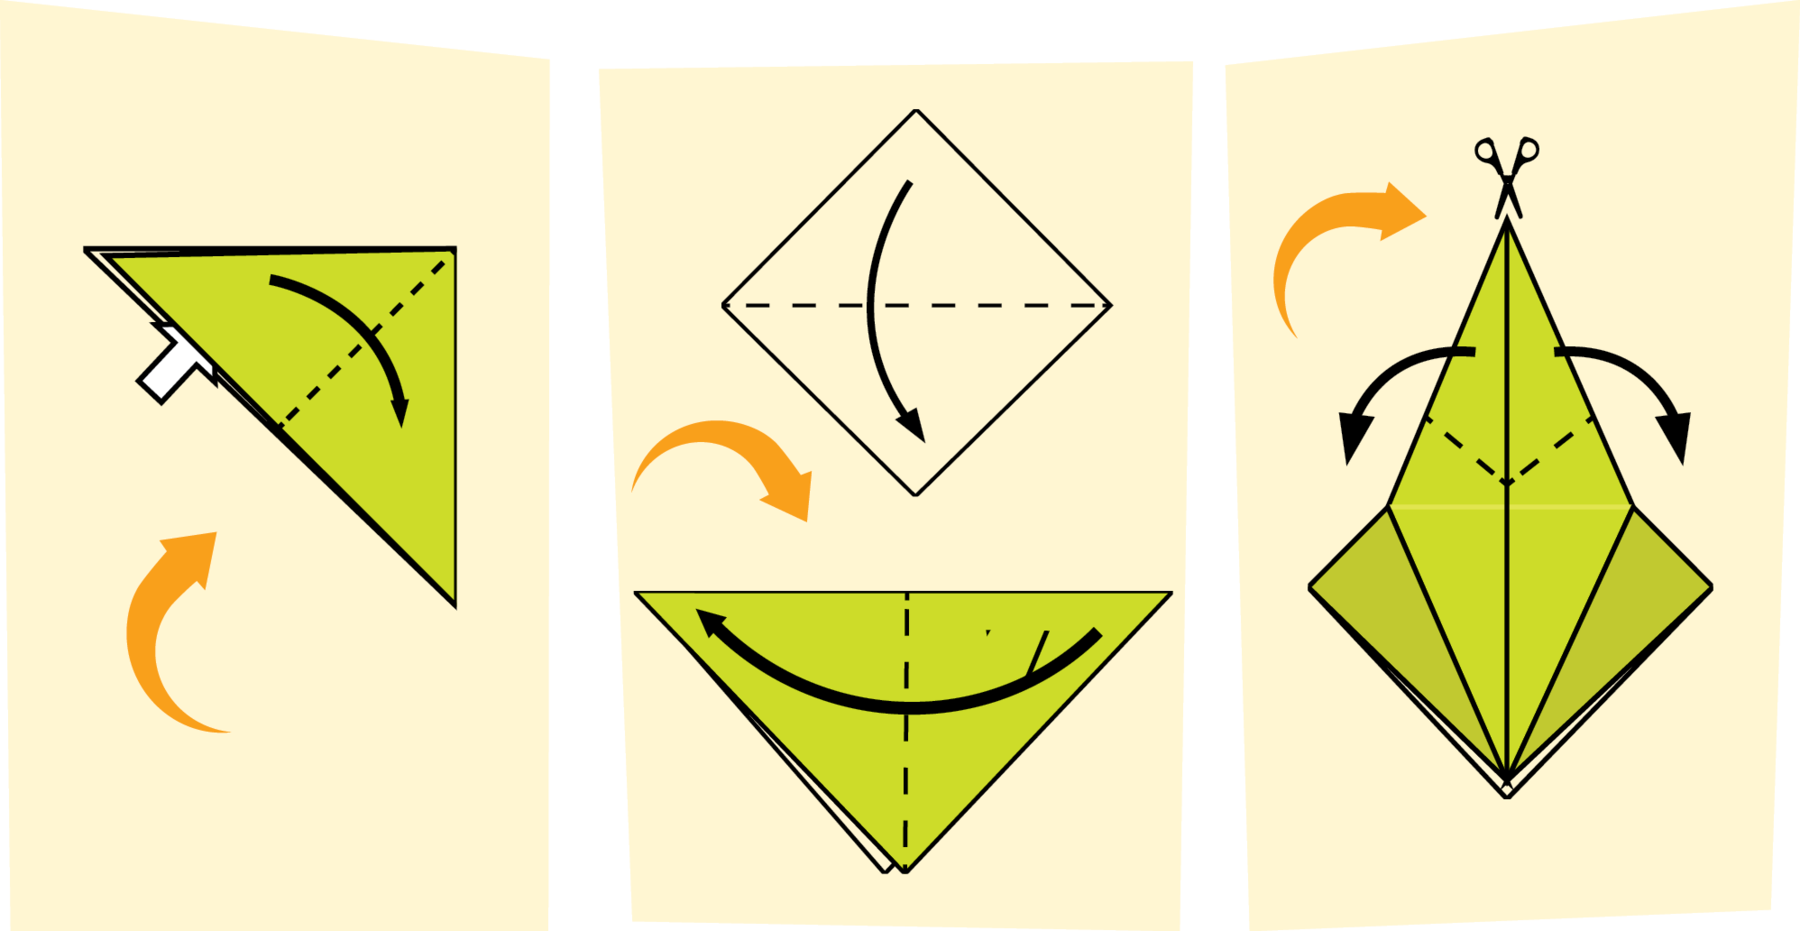 Ilustração. Instruções para criar uma dobradura com três passos. Imagem um. Um papel verde dobrado em formato de um triângulo, com uma linha pontilhada na vertical bem no meio e uma seta indo da esquerda para a direita. Na parte inferior, há uma seta branca entrando no meio das camadas da dobradura. Mais abaixo, seta laranja em curva apontando para cima.  Imagem dois. Na parte superior, desenho em traço em forma de quadrado mostrando uma linha pontilhada bem no meio e uma seta indicando movimento de cima para baixo. Há uma seta laranja em curva indicando para baixo, onde há uma dobradura de triângulo com o topo voltado para baixo, com uma linha pontilhada ao centro e seta indicando movimento da direita para a esquerda.  Imagem três. Papel com um losango comprido na parte da frente da dobradura, com uma linha pontilhada em formato de V na ponta de cima. Há um ícone de tesoura indicando um corte nessa ponta. Setas apontando para lados opostos indicam que cada ponta deve ser dobrada em direções opostas, para a esquerda e para a direita, em formato triangular. À esquerda, há uma seta laranja em curva para a direita.